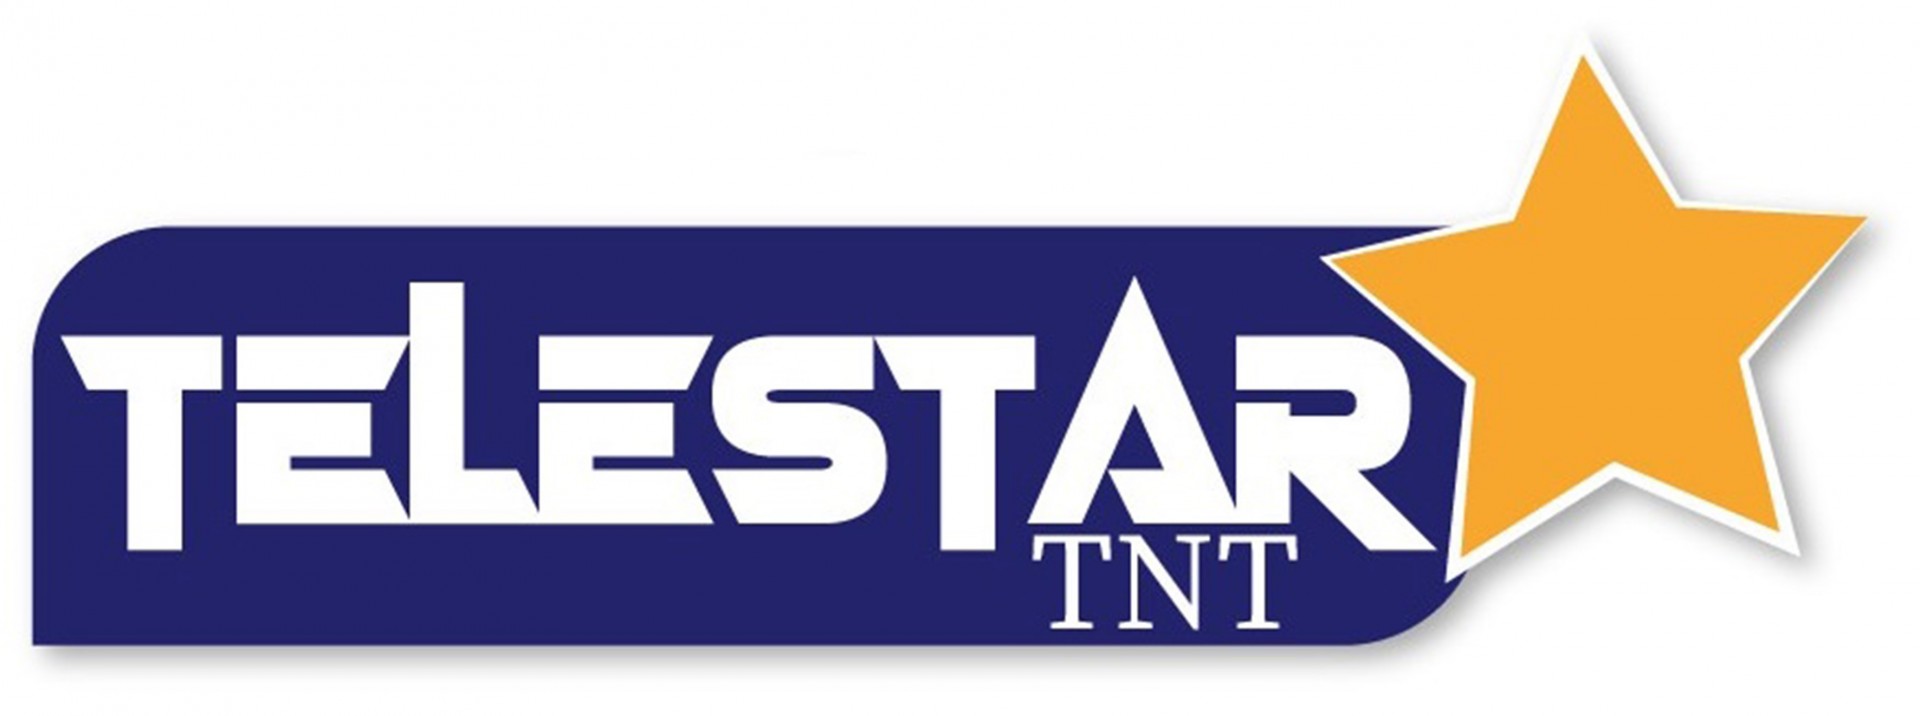 TELESTAR TNT